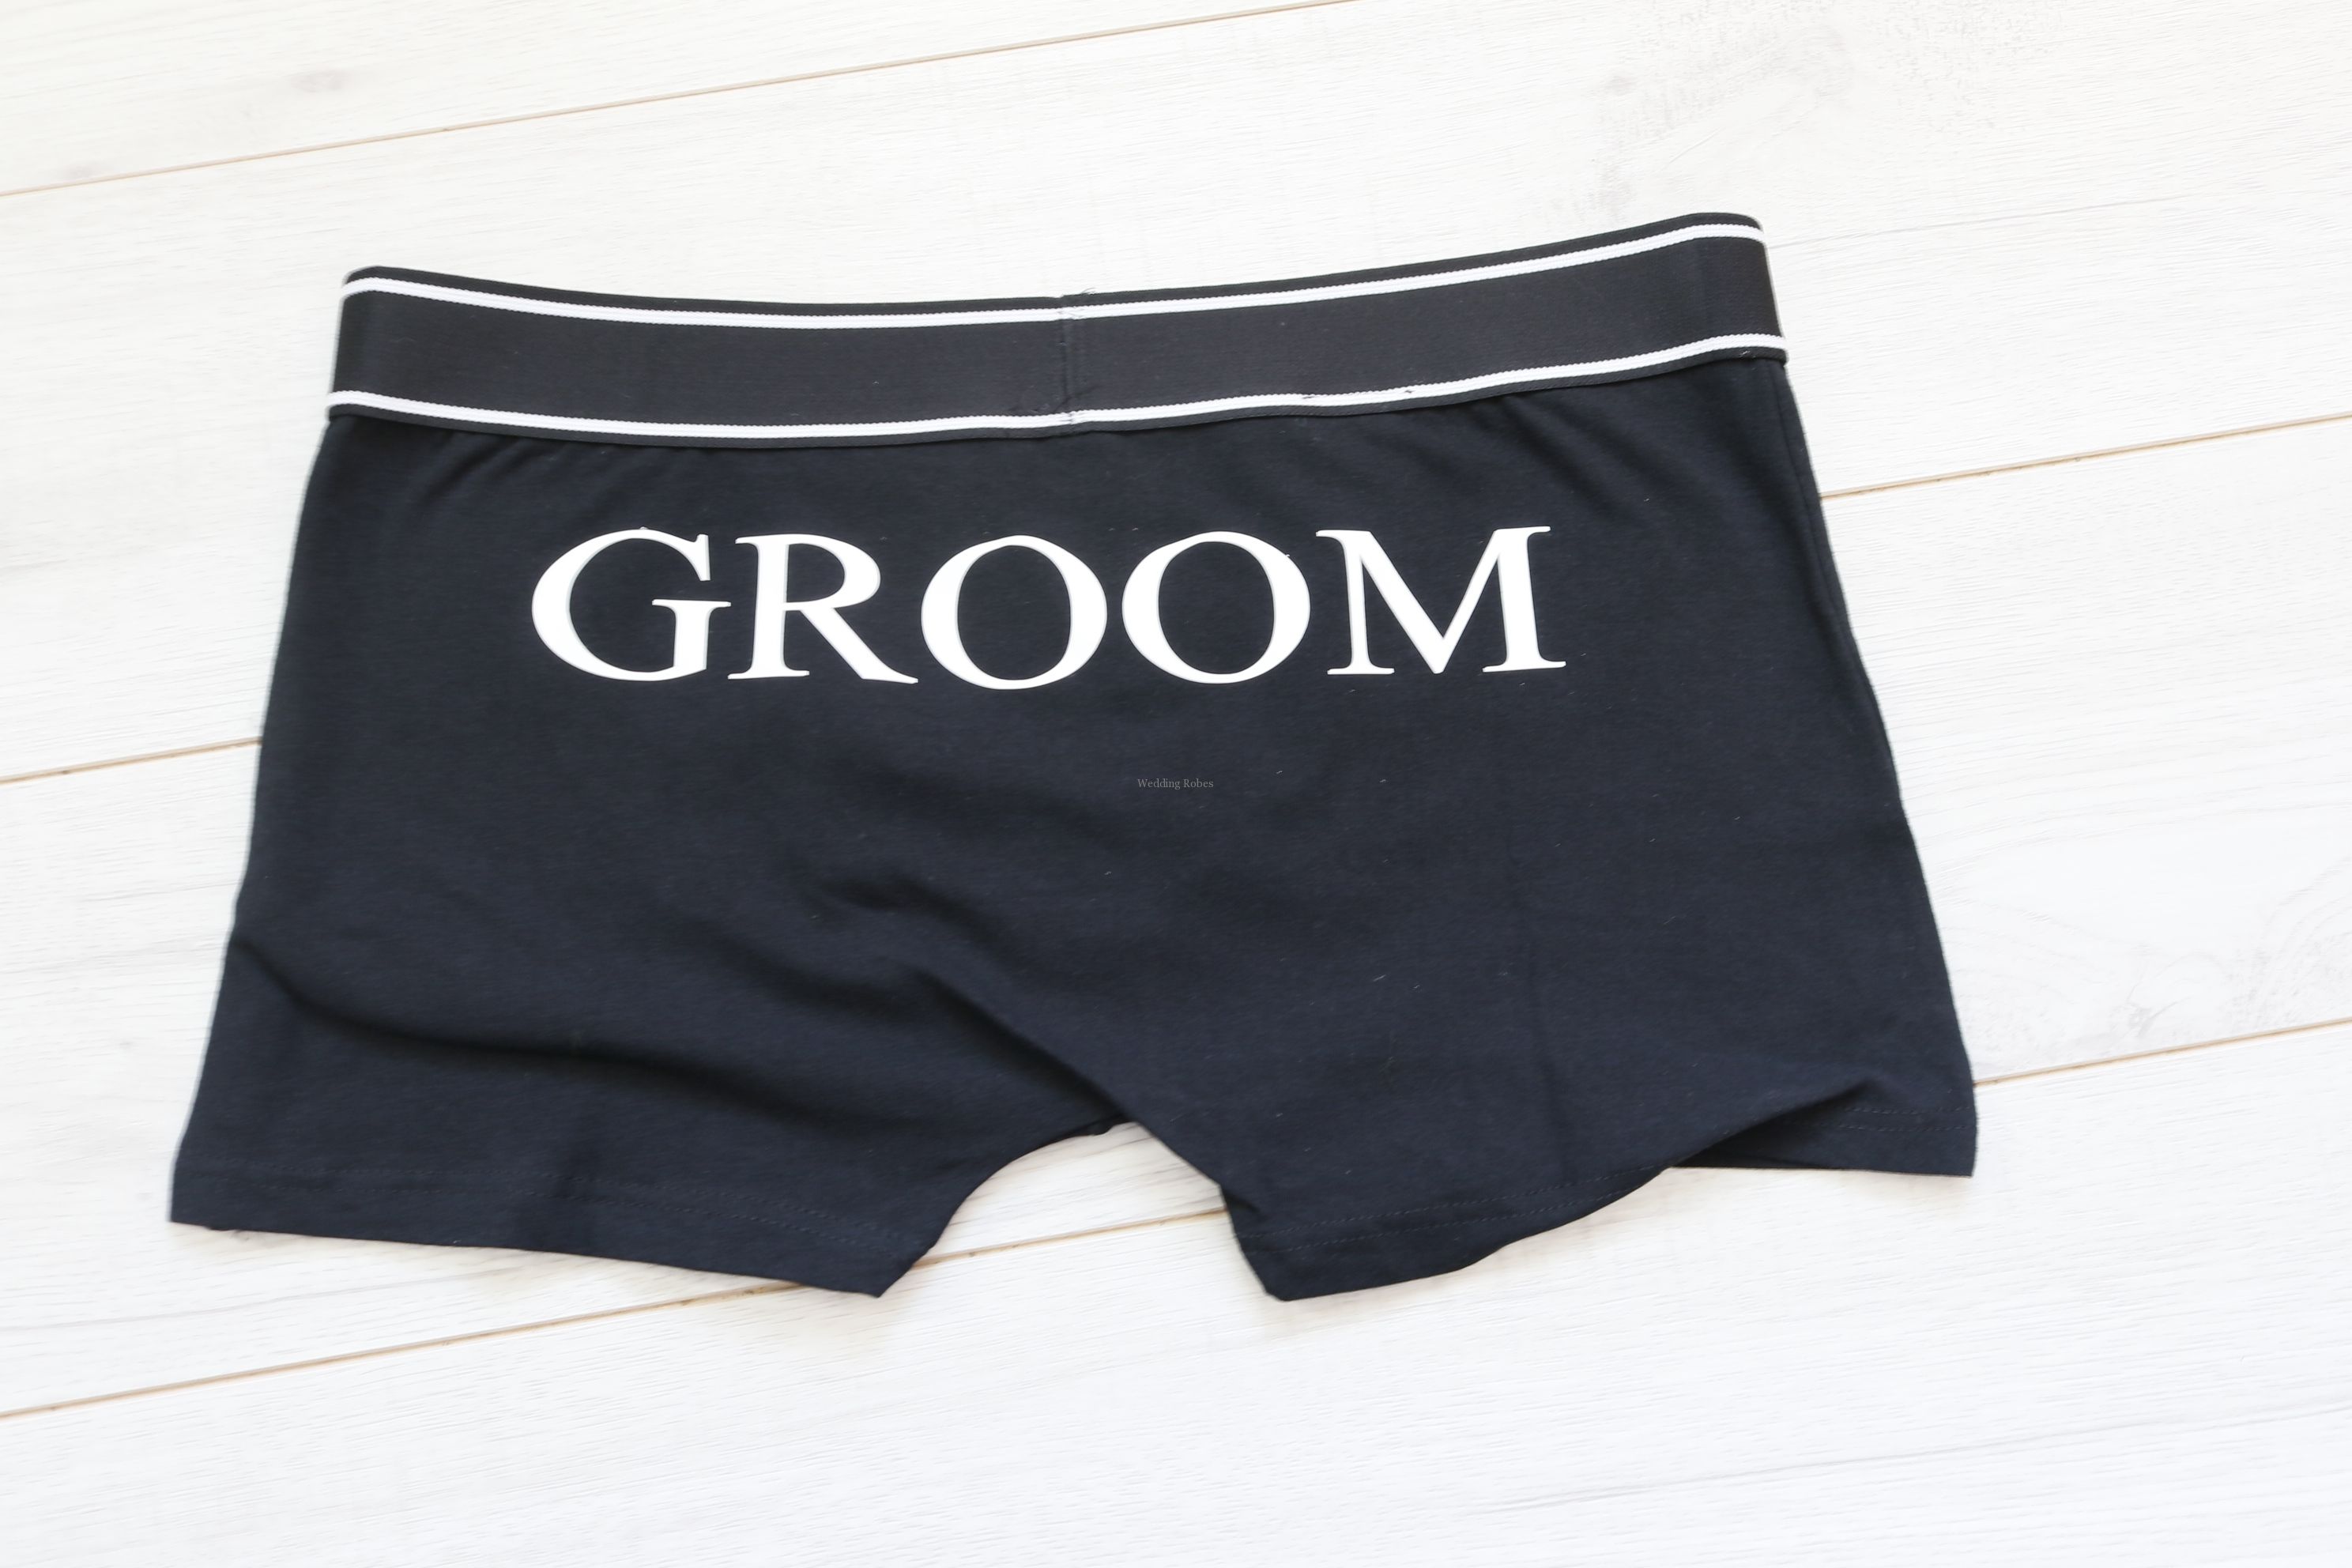 Groom boxer shorts, Personalised boxers, Groom underwear, Wedding